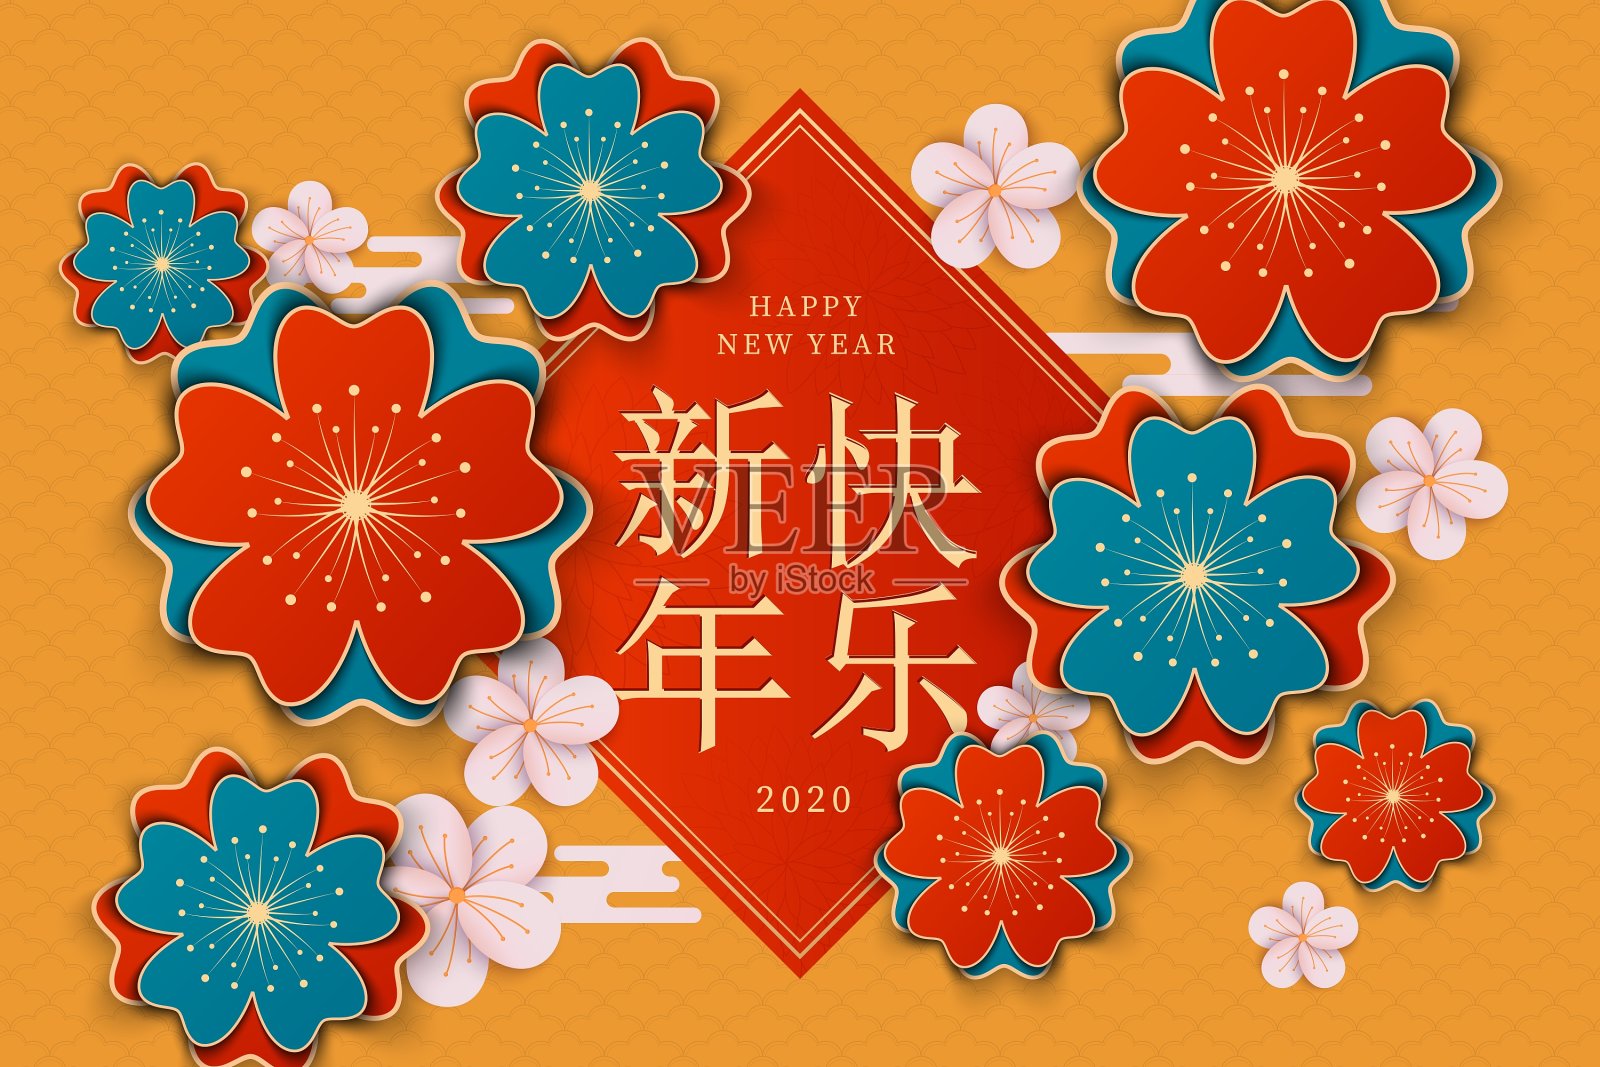 2020年中国新年鼠年，红色和金色剪纸鼠的性格，花和亚洲元素与工艺风格的背景。设计模板素材